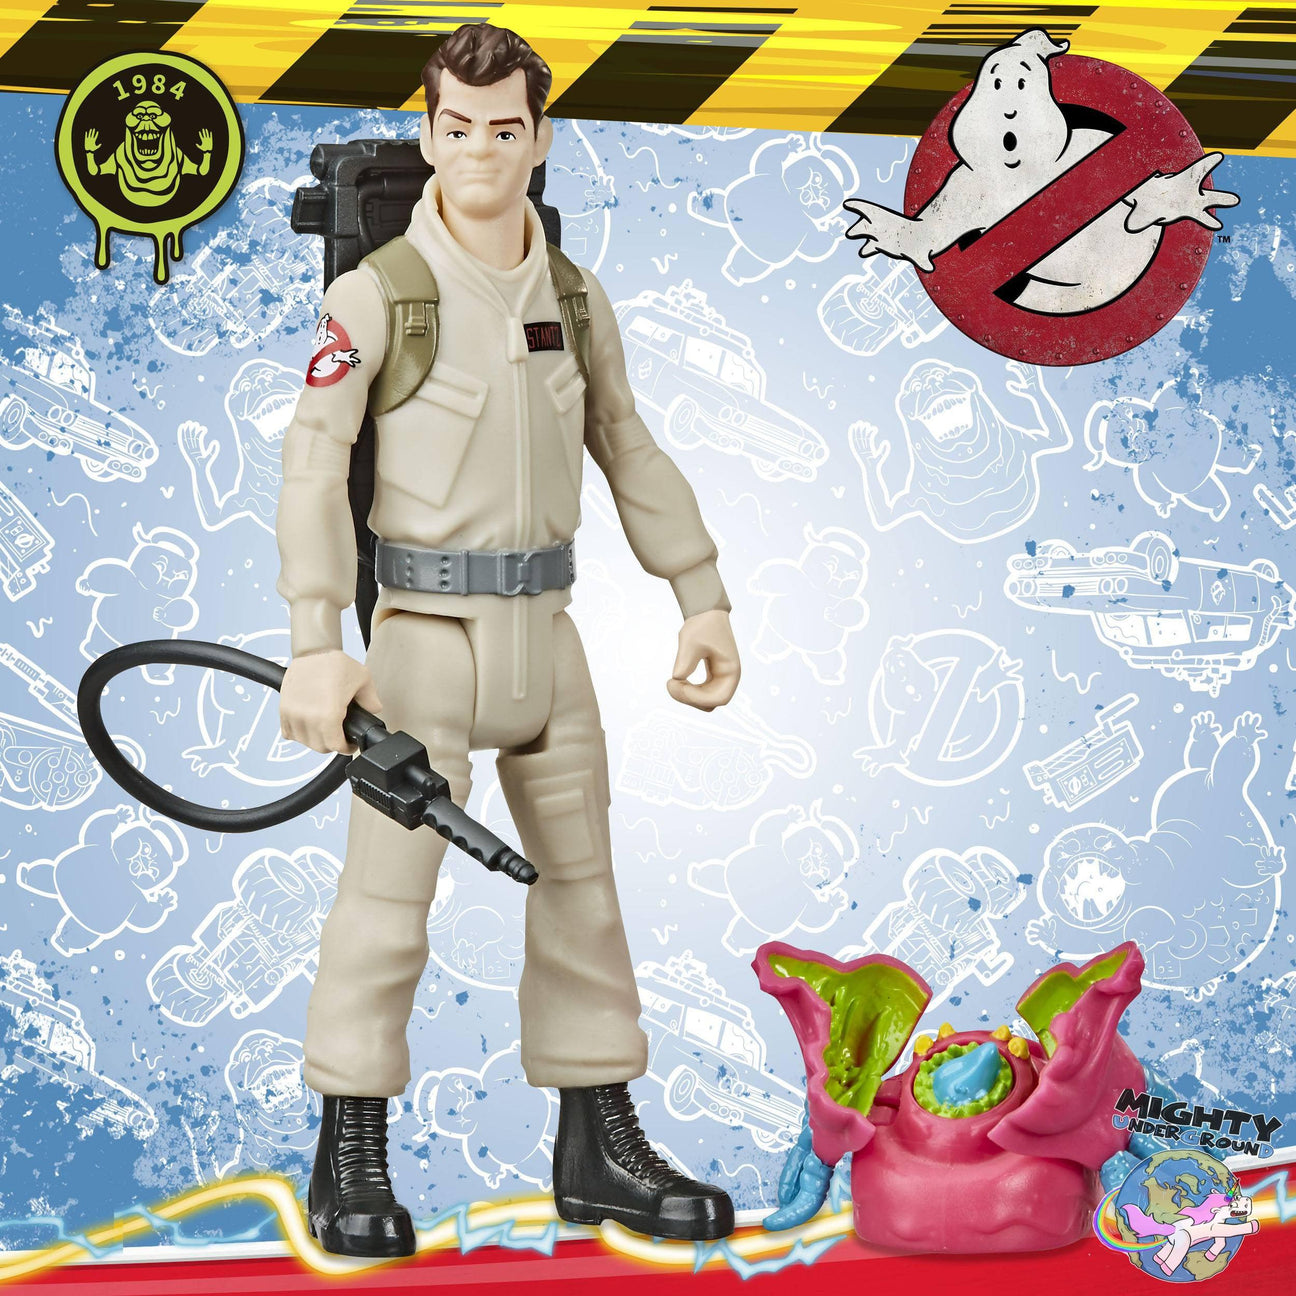 Ghostbusters: Fright Features Wave 1 (4-Figuren Set)-Actionfiguren-Hasbro-Mighty Underground